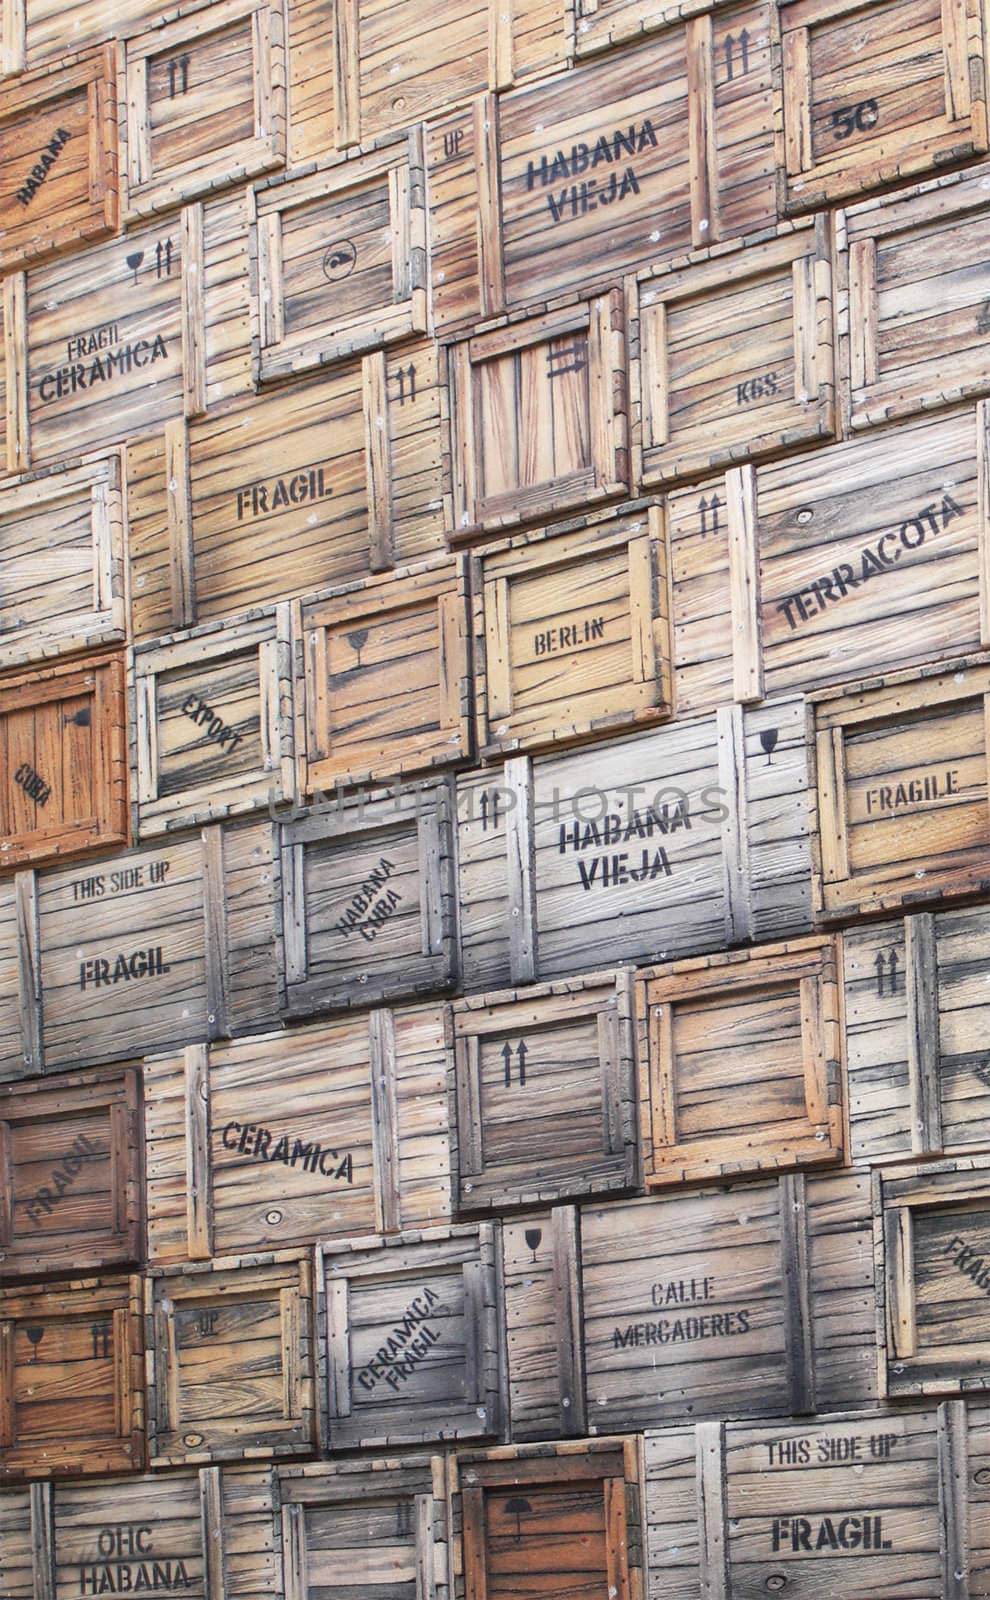 Wooden Boxes in Havana, Cuba by Brigida_Soriano